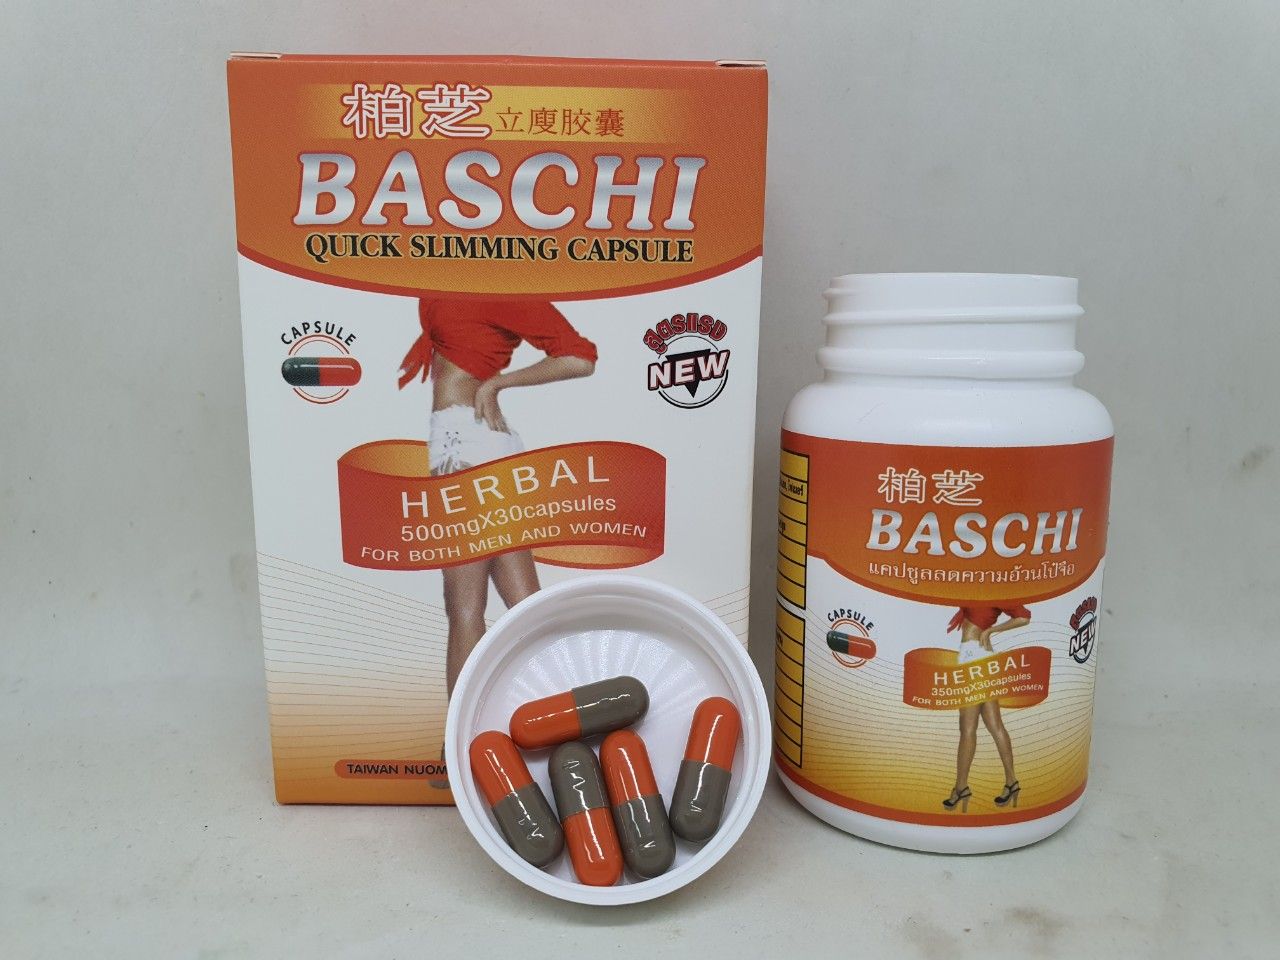  Viên uống giảm cân baschi quick slimming capsule mới hàm lượng 500mg màu cam 30 viên 